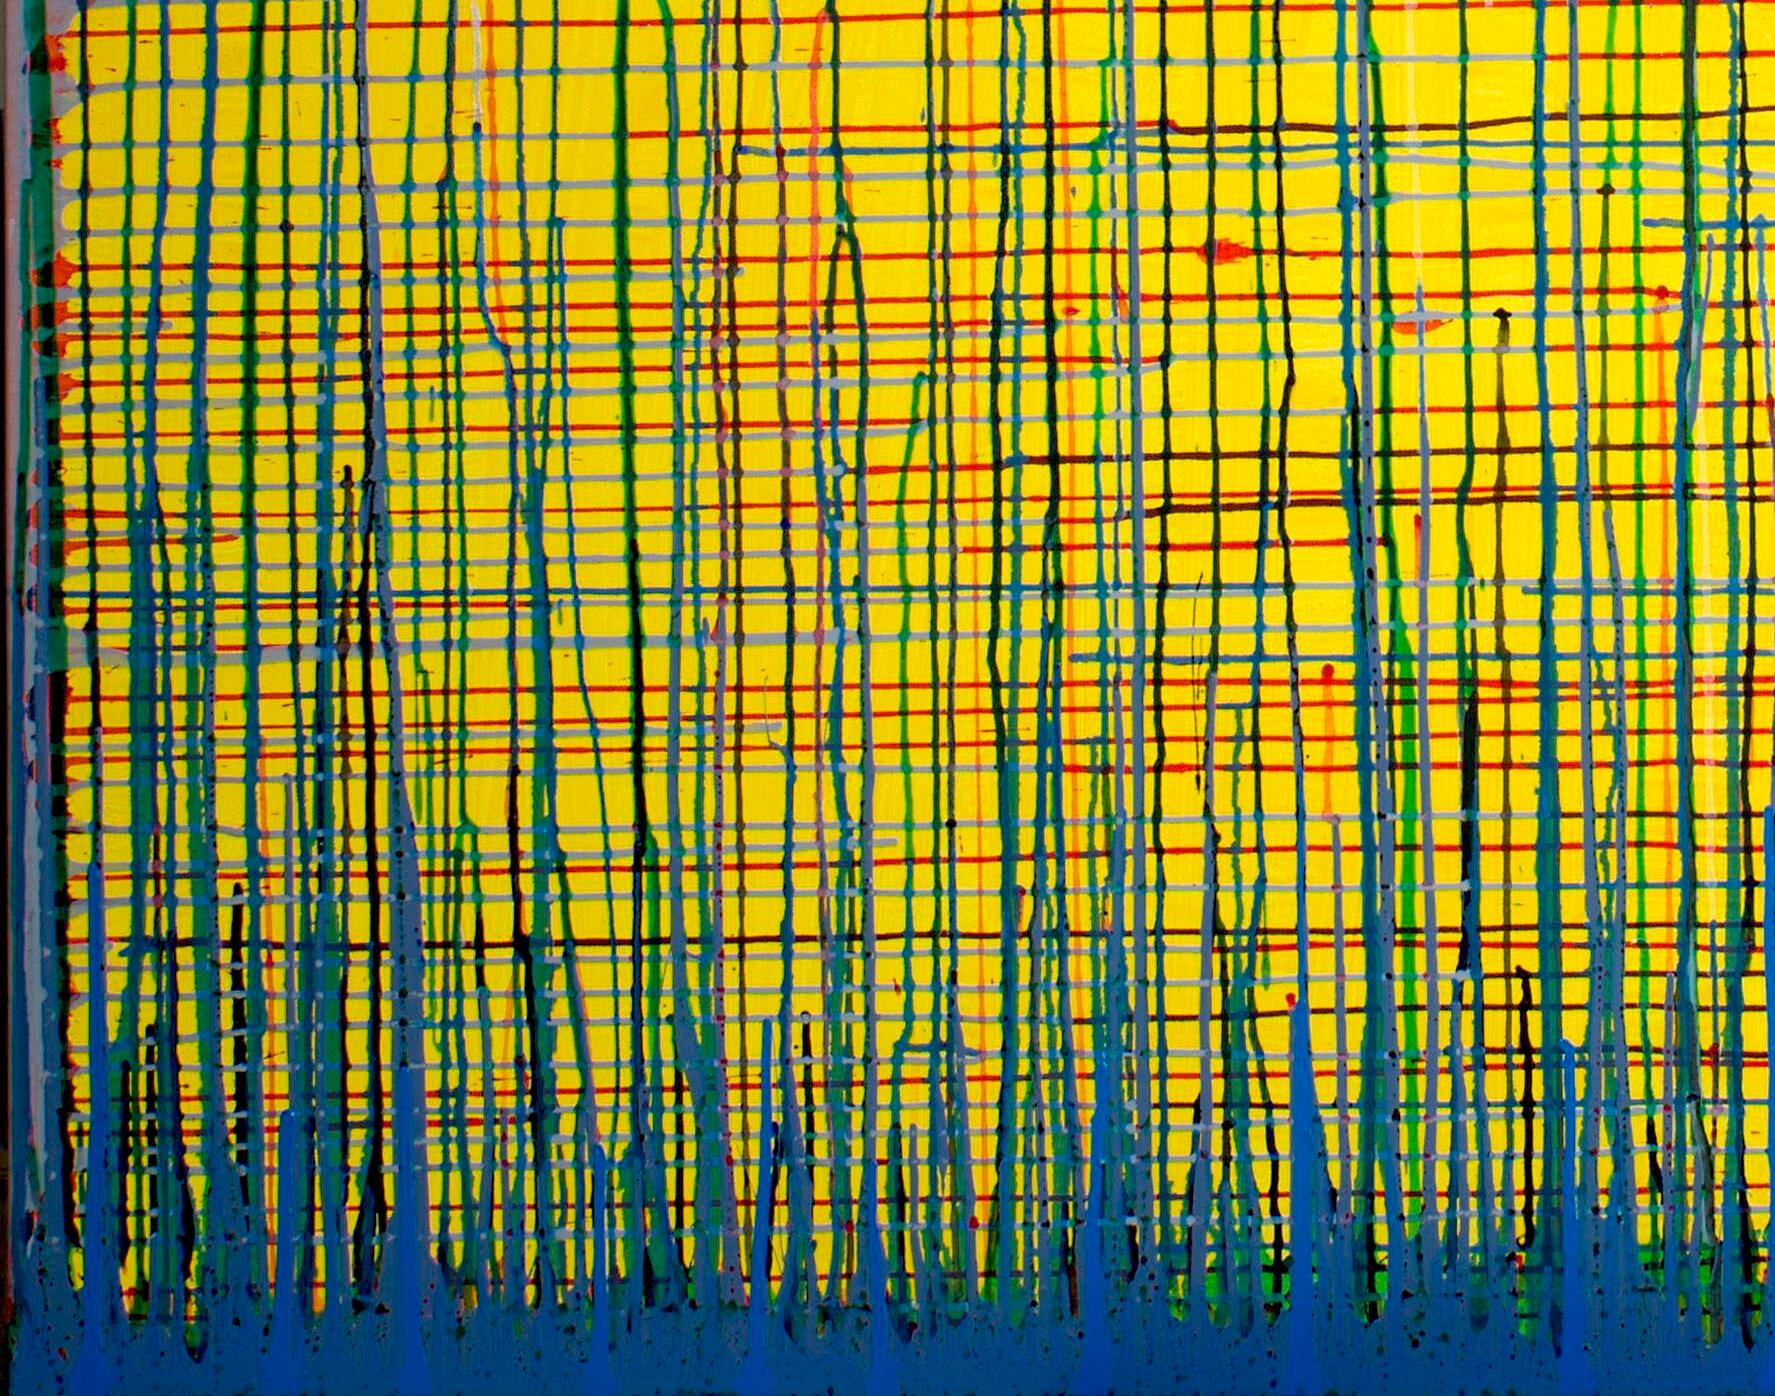 Flow Number1 de Detlef Aderhold - Grande peinture abstraite énergétique contemporaine énergique - Contemporain Painting par Detlef E. Aderhold